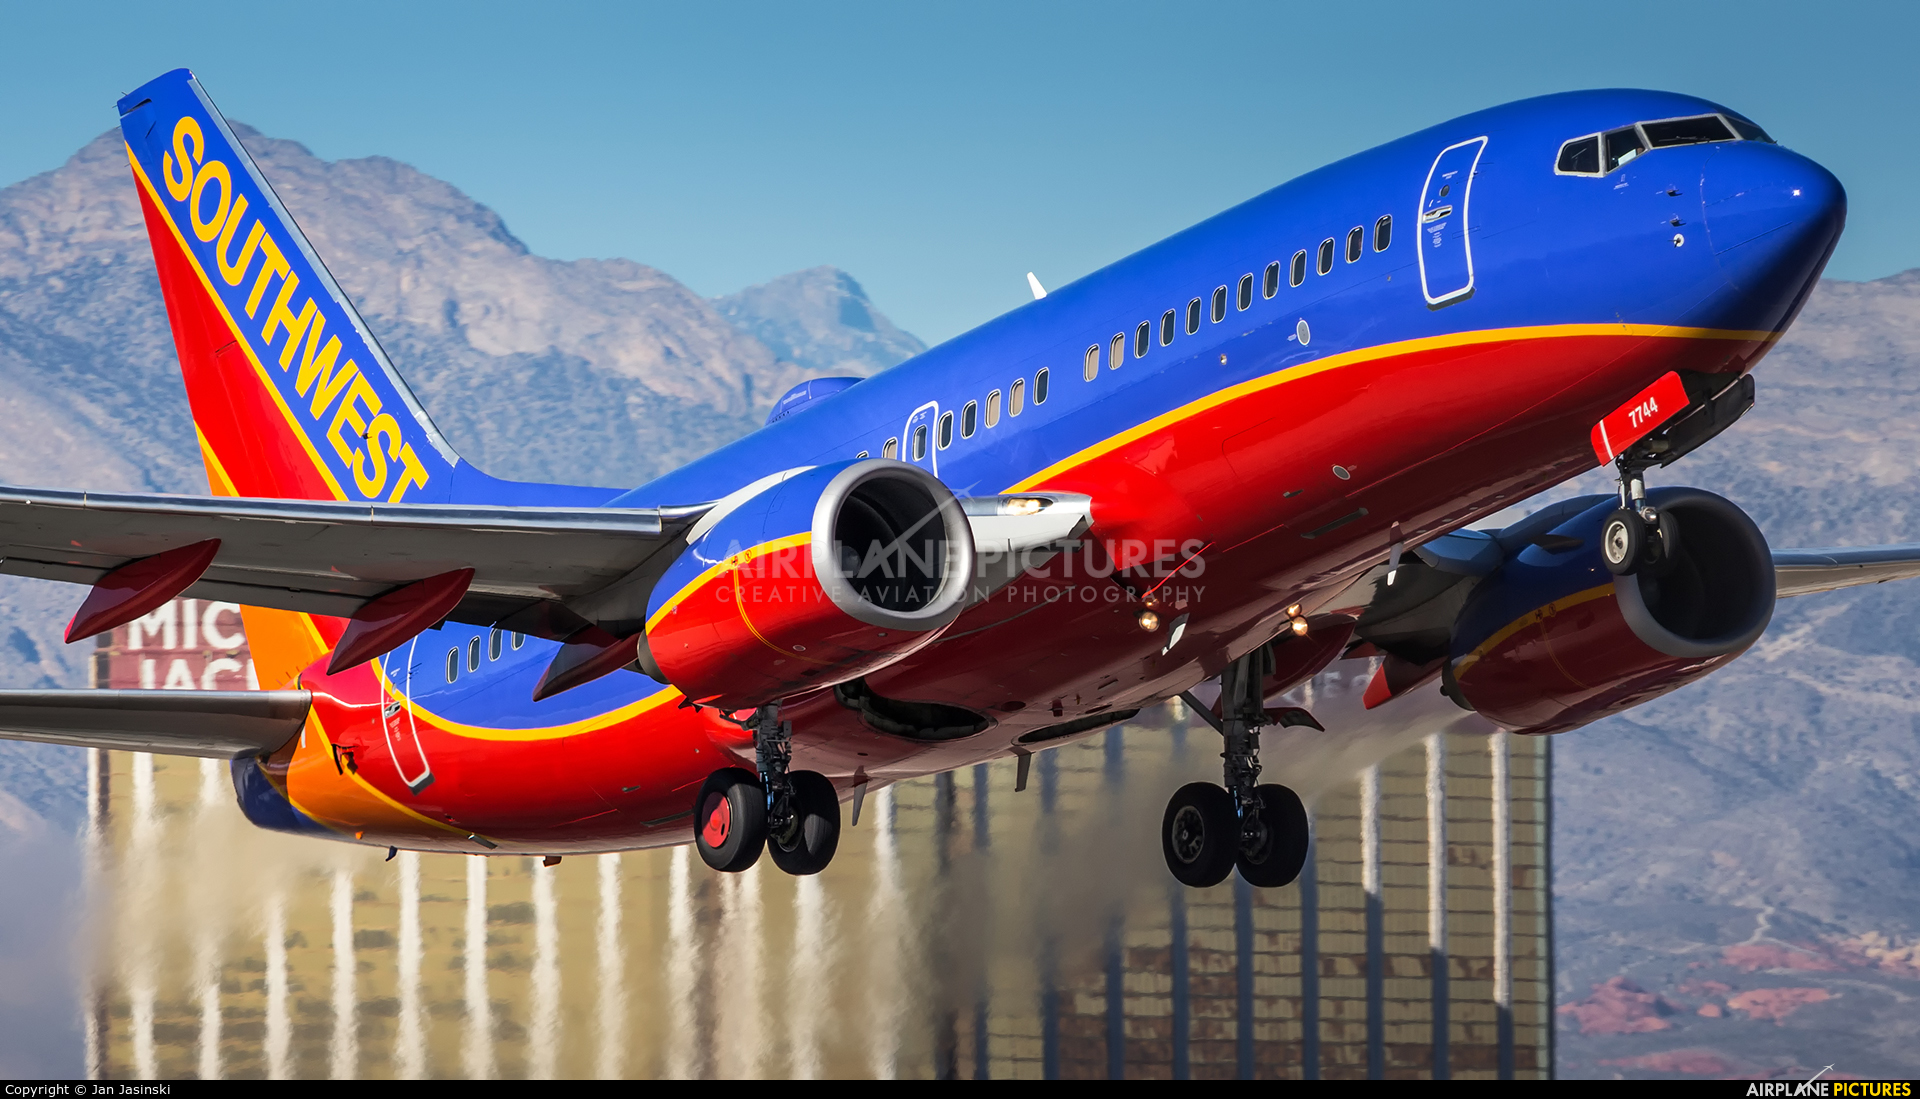 N7744A Southwest Airlines Boeing 737700 at Las Vegas McCarran Intl